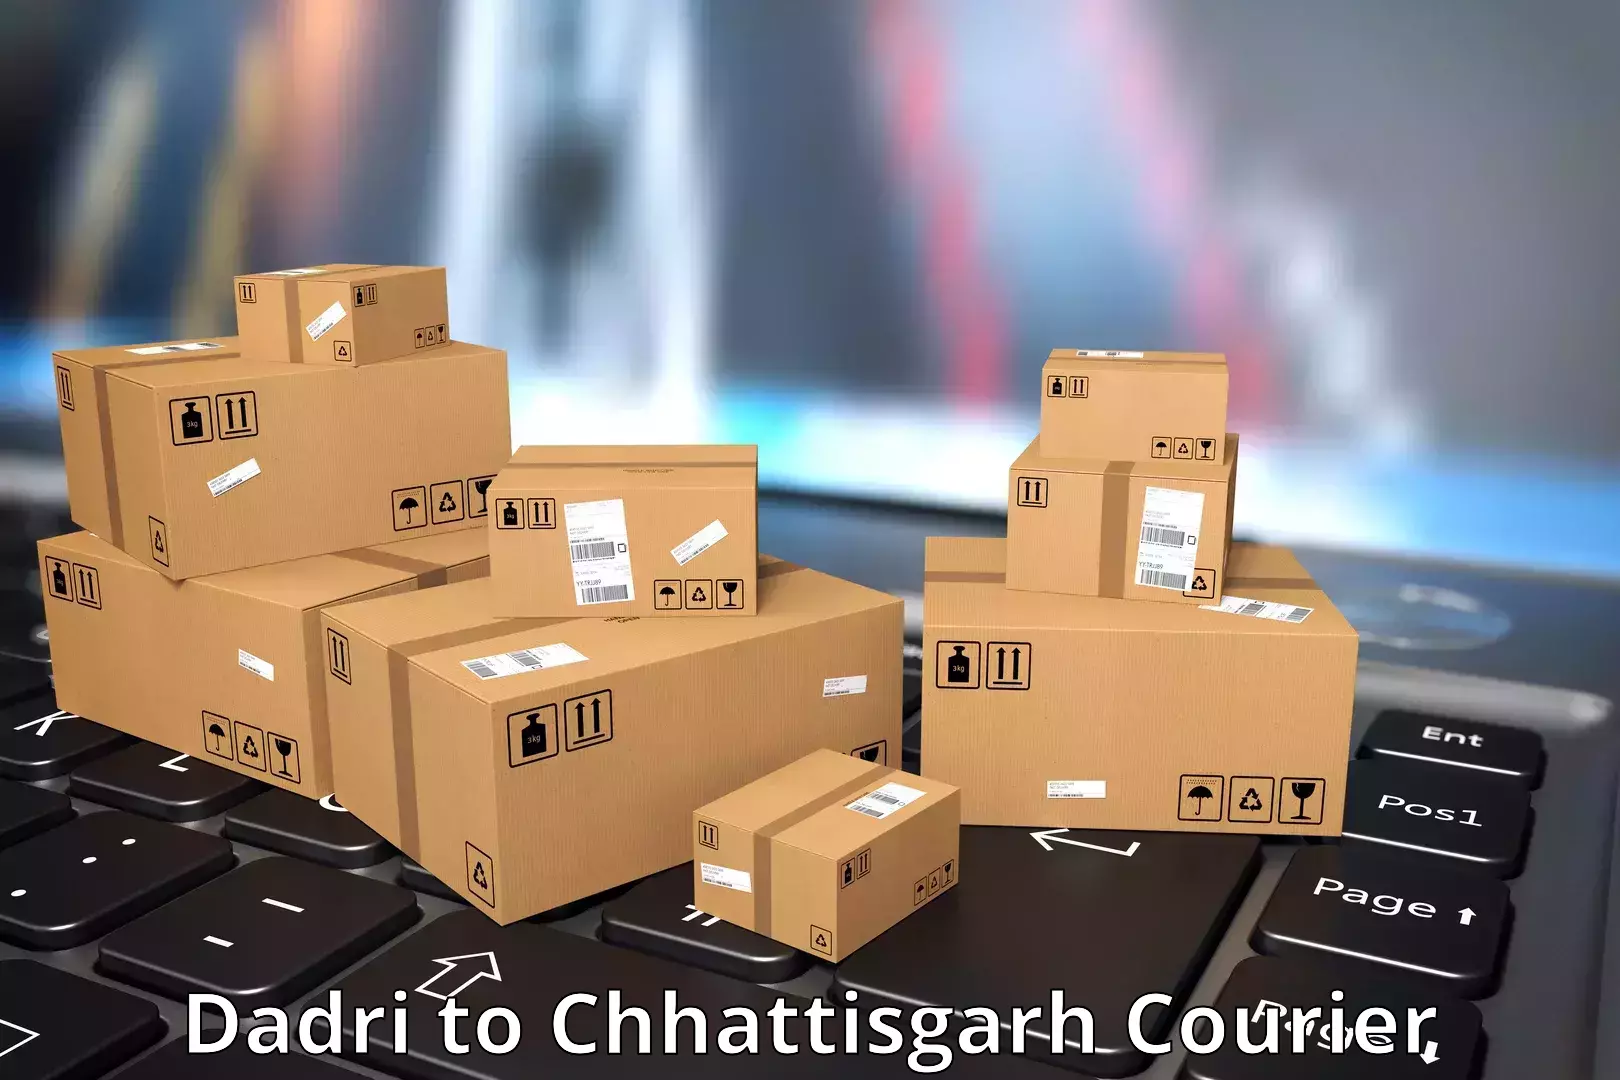 On-demand courier Dadri to Chhattisgarh